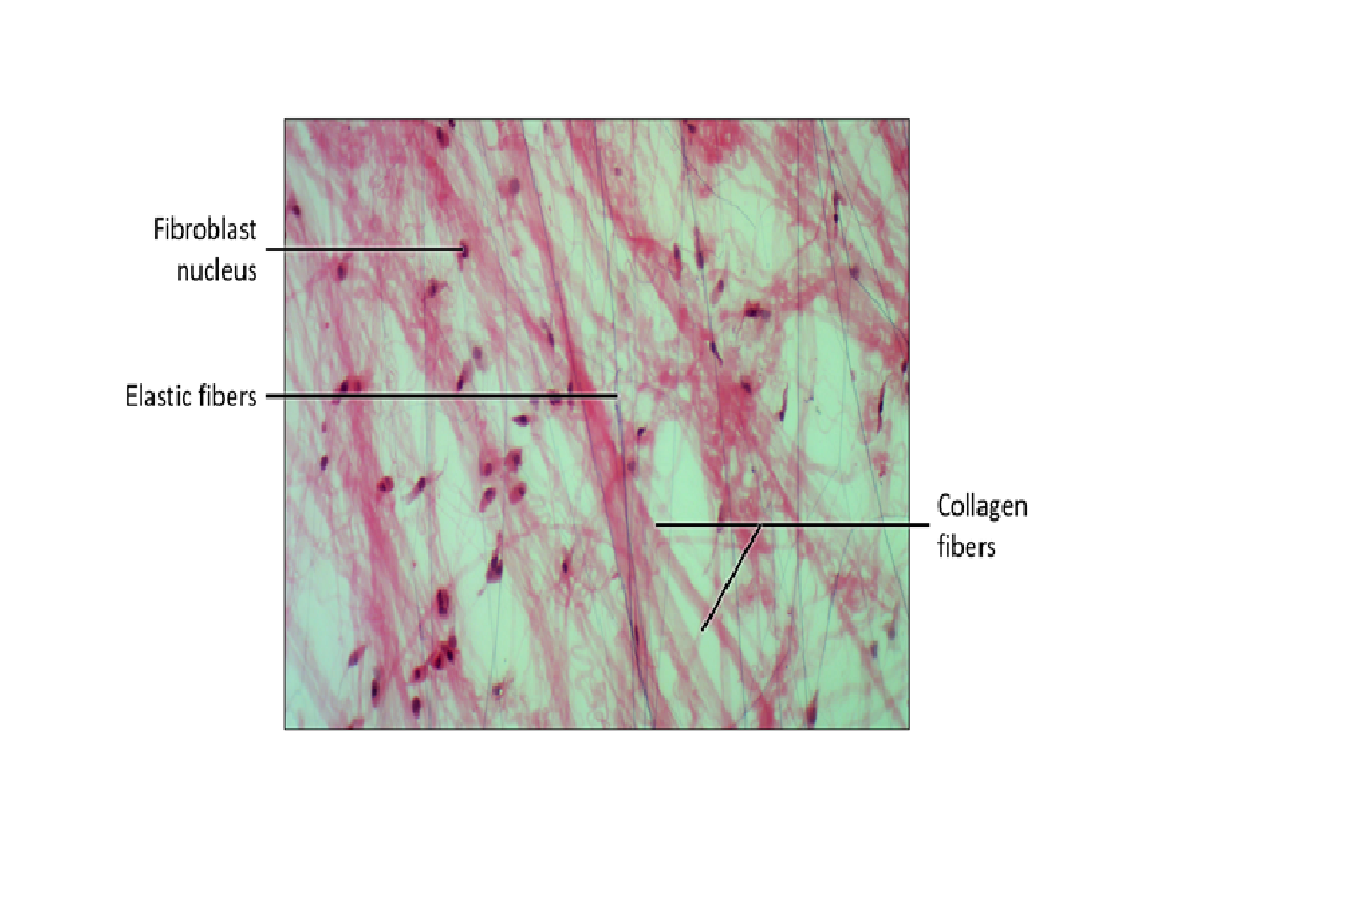 reticular tissue diagram